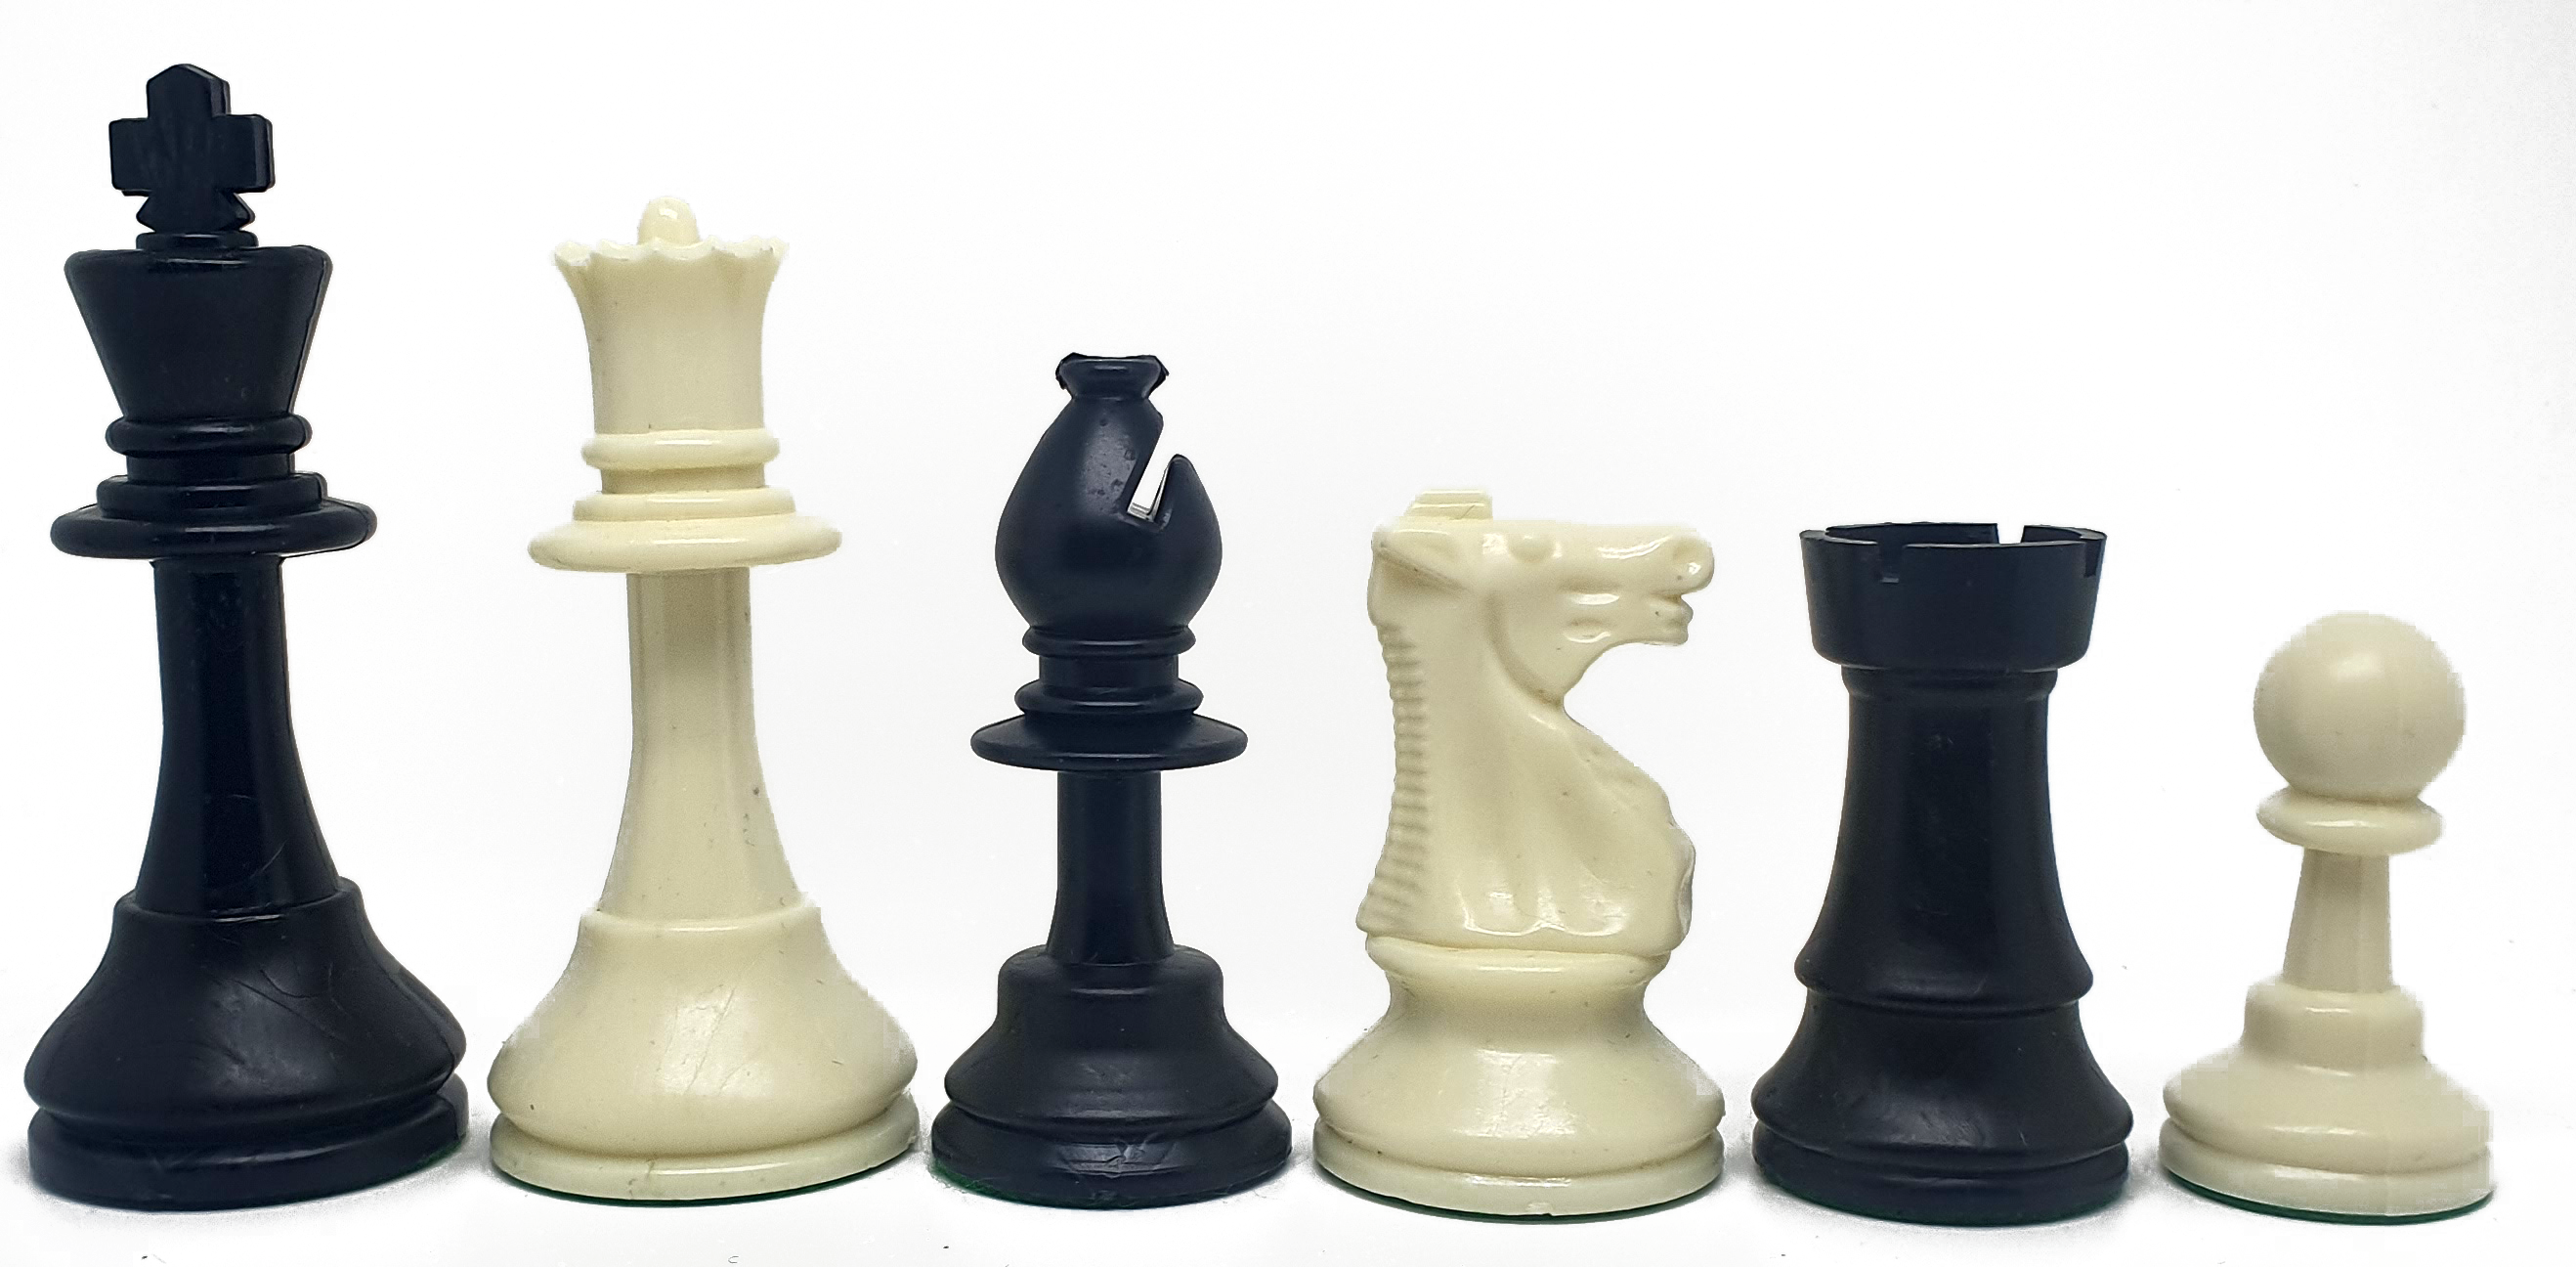 Piezas de ajedrez de plástico Staunton 5 estándar. Doble dama (altura del rey: 9cm)